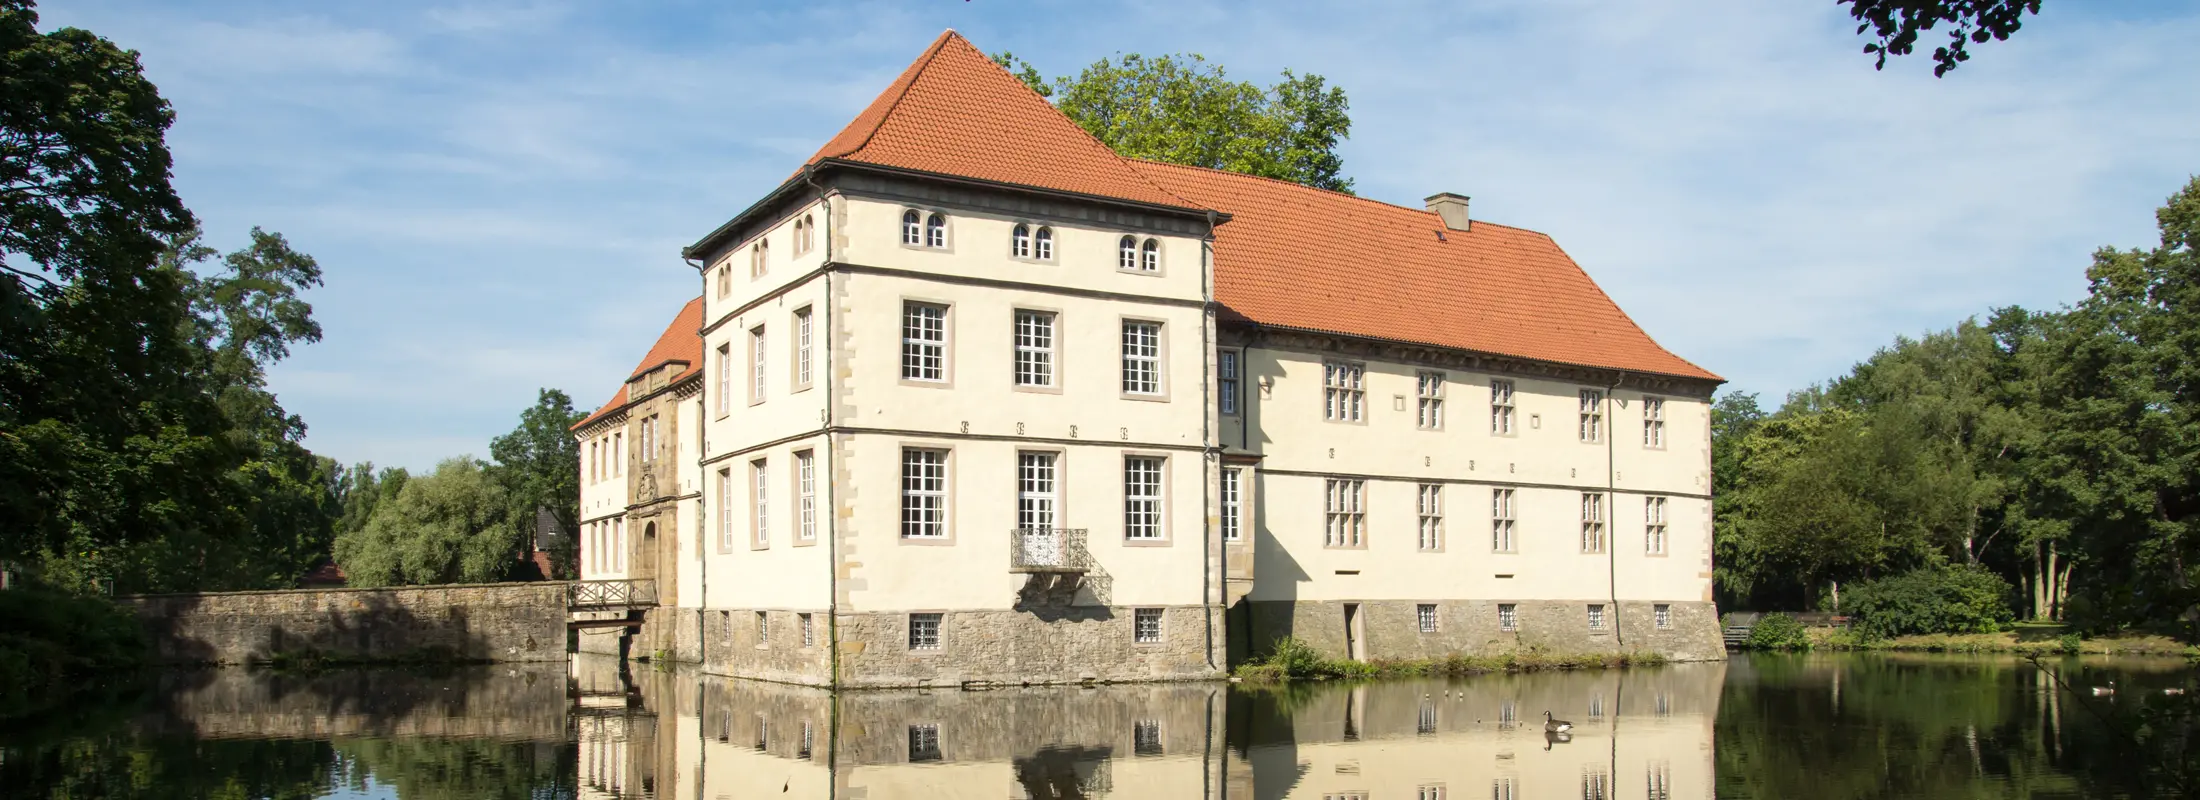 Bild von Schloss Strünkede (Emschertal-Museum) in Herne Baukau Ost